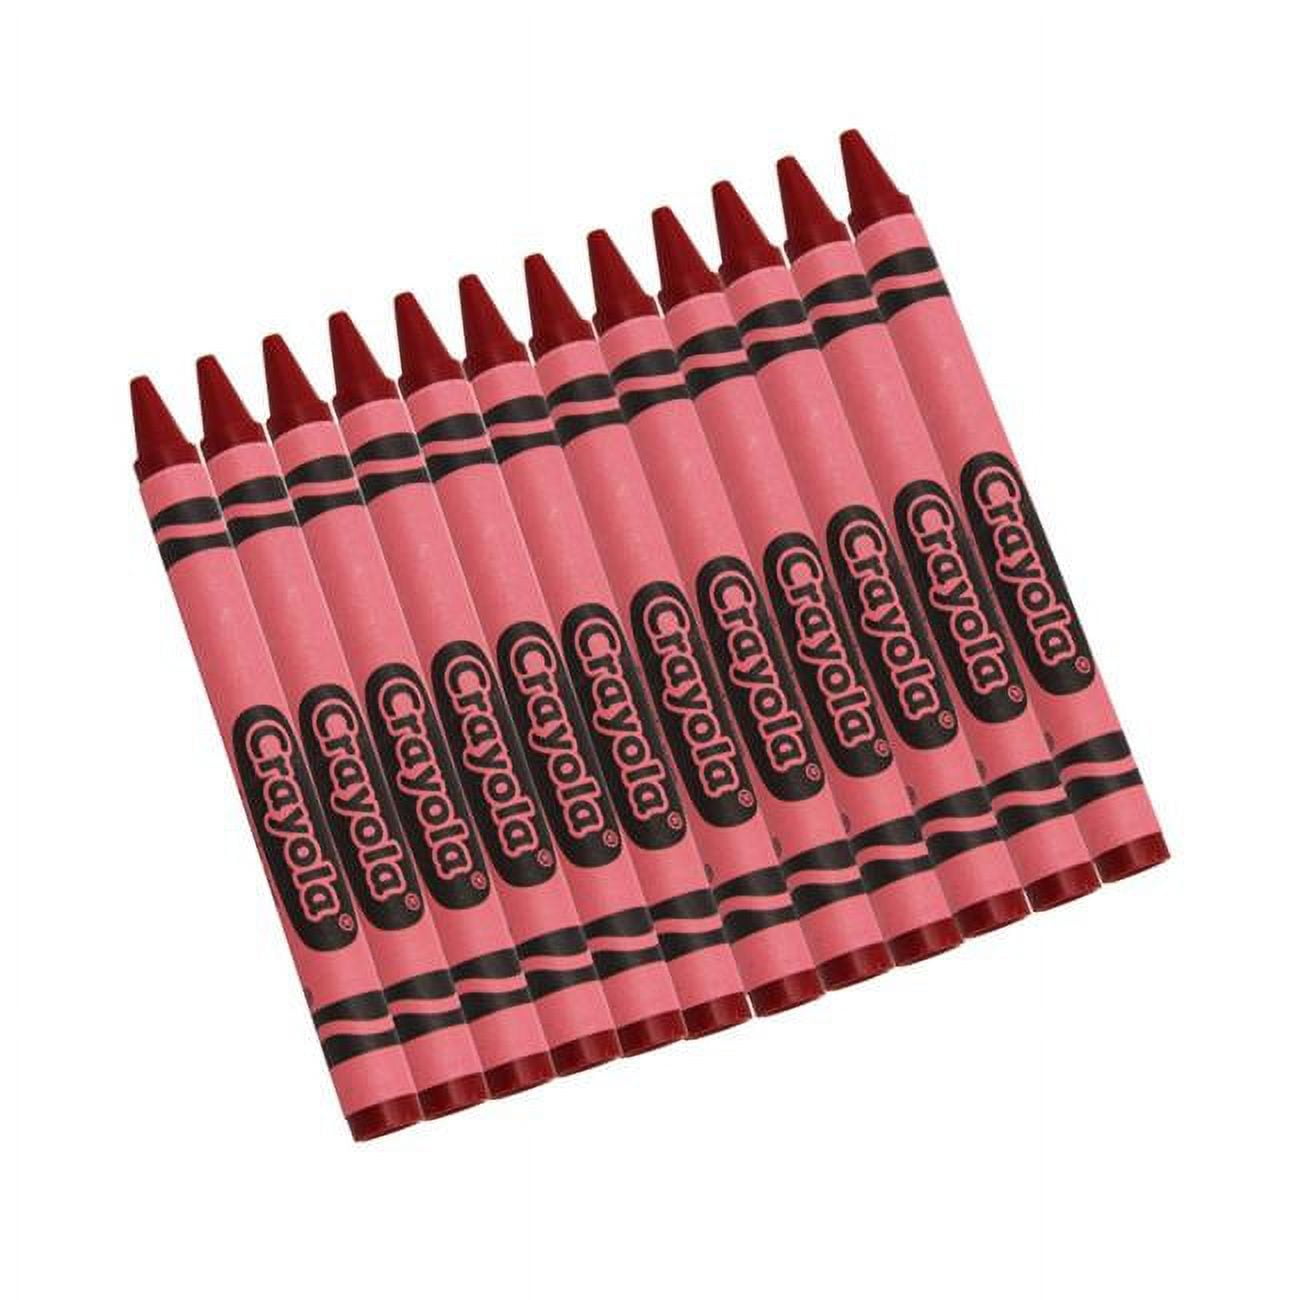 Crayola 12 ct. Twistables Colored Pencils – 365 Wholesale